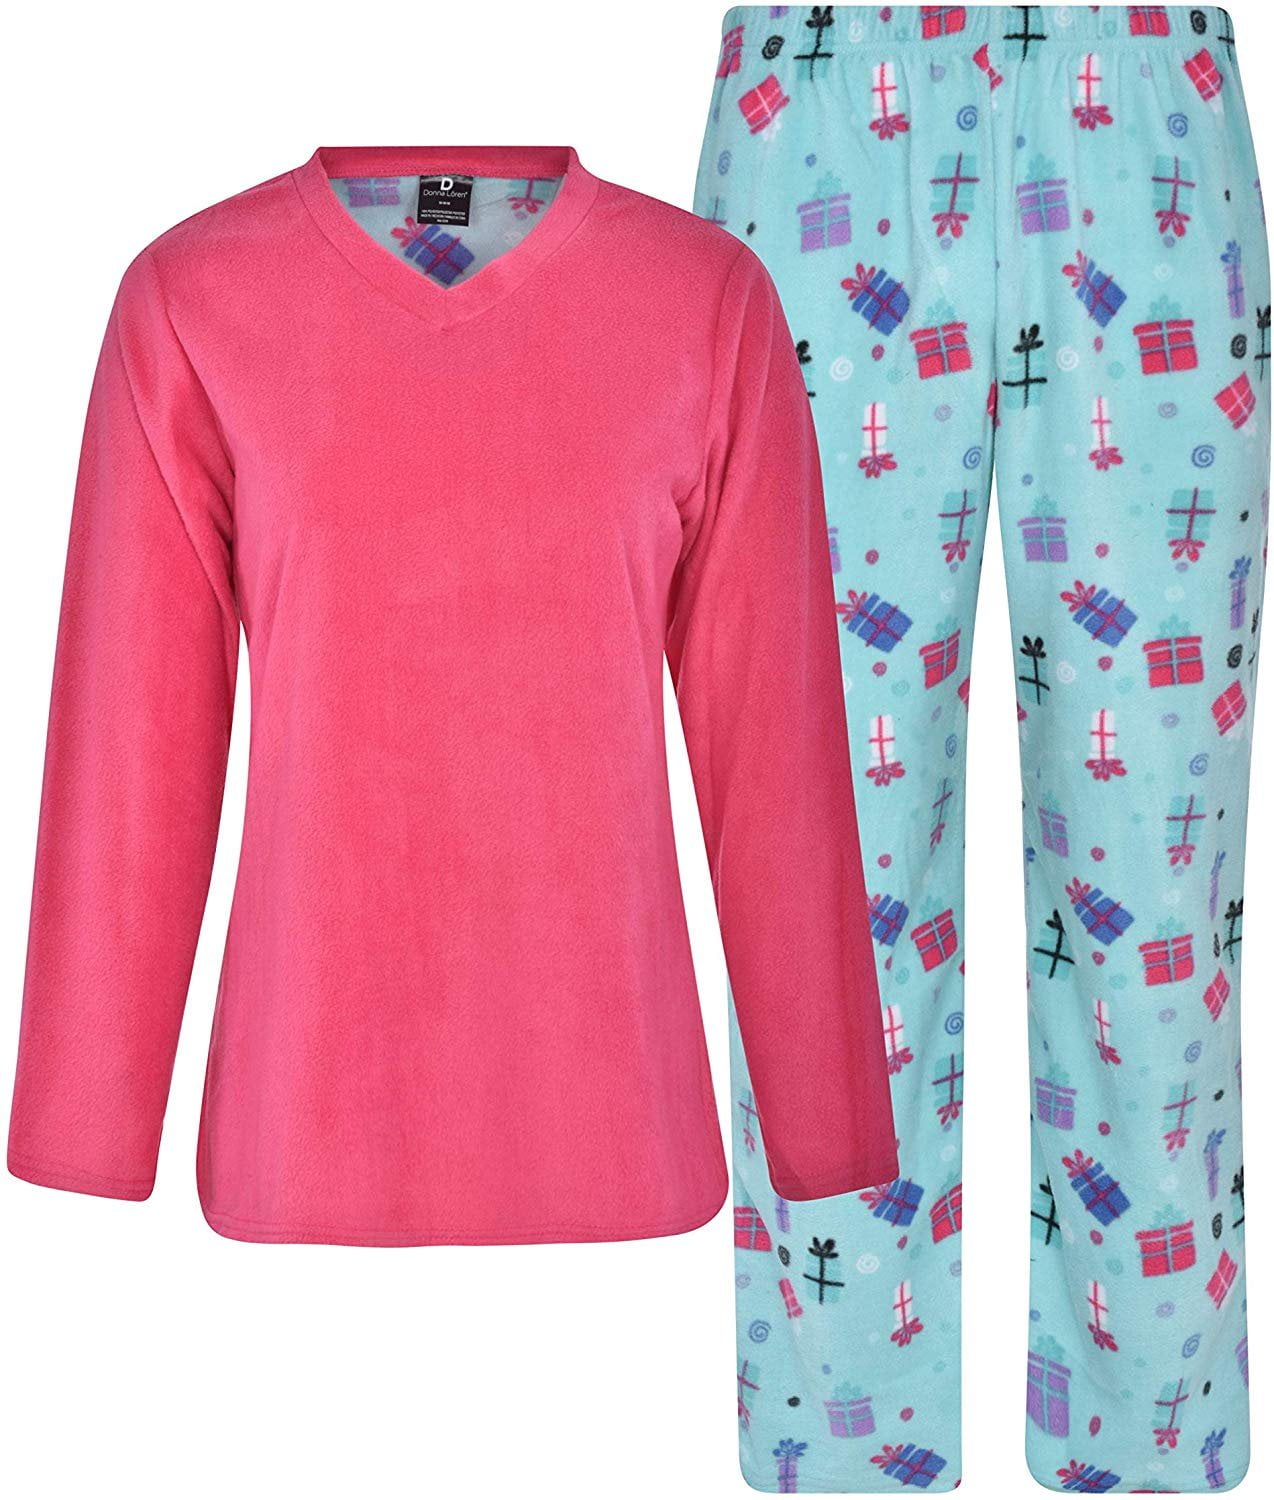 Donna L'oren Women's Fleece Pajamas Set Giftable Coral or Micro Fleece ...